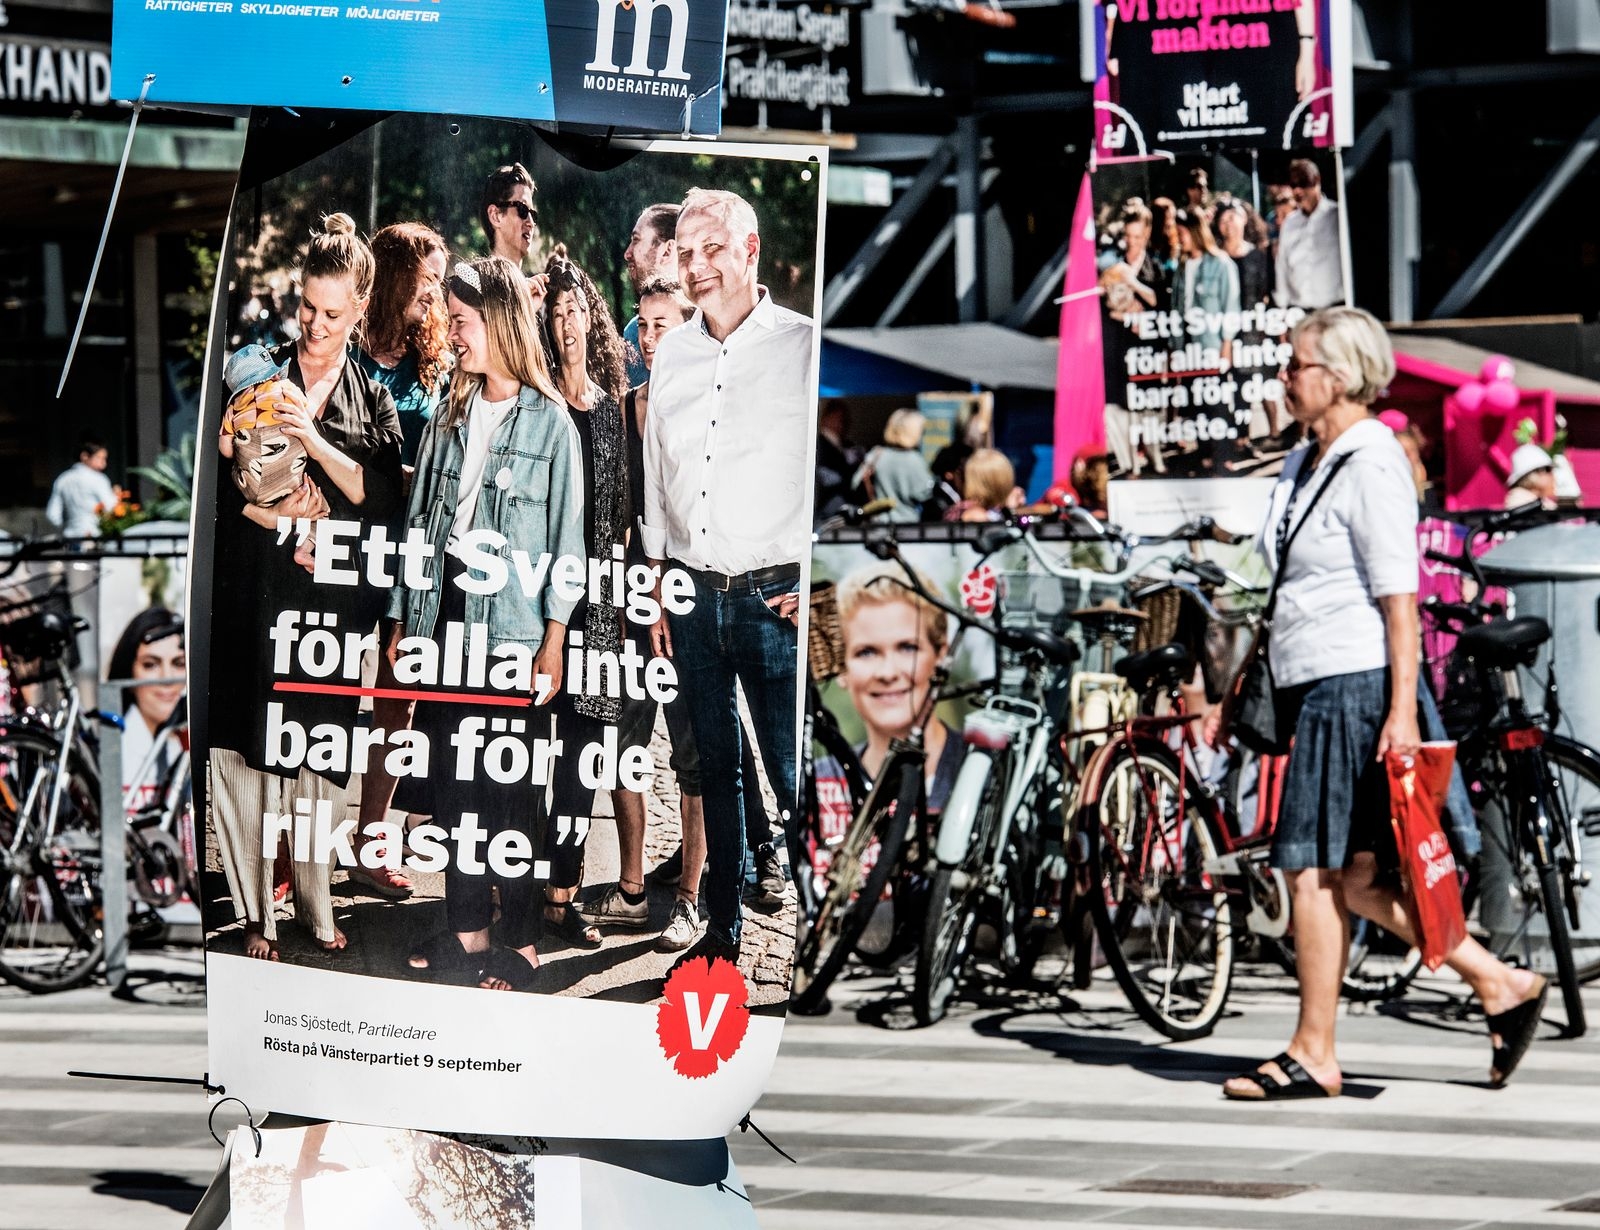 Vänsterpartiet vill se ett Sverige för alla, inte bara för de rikaste.